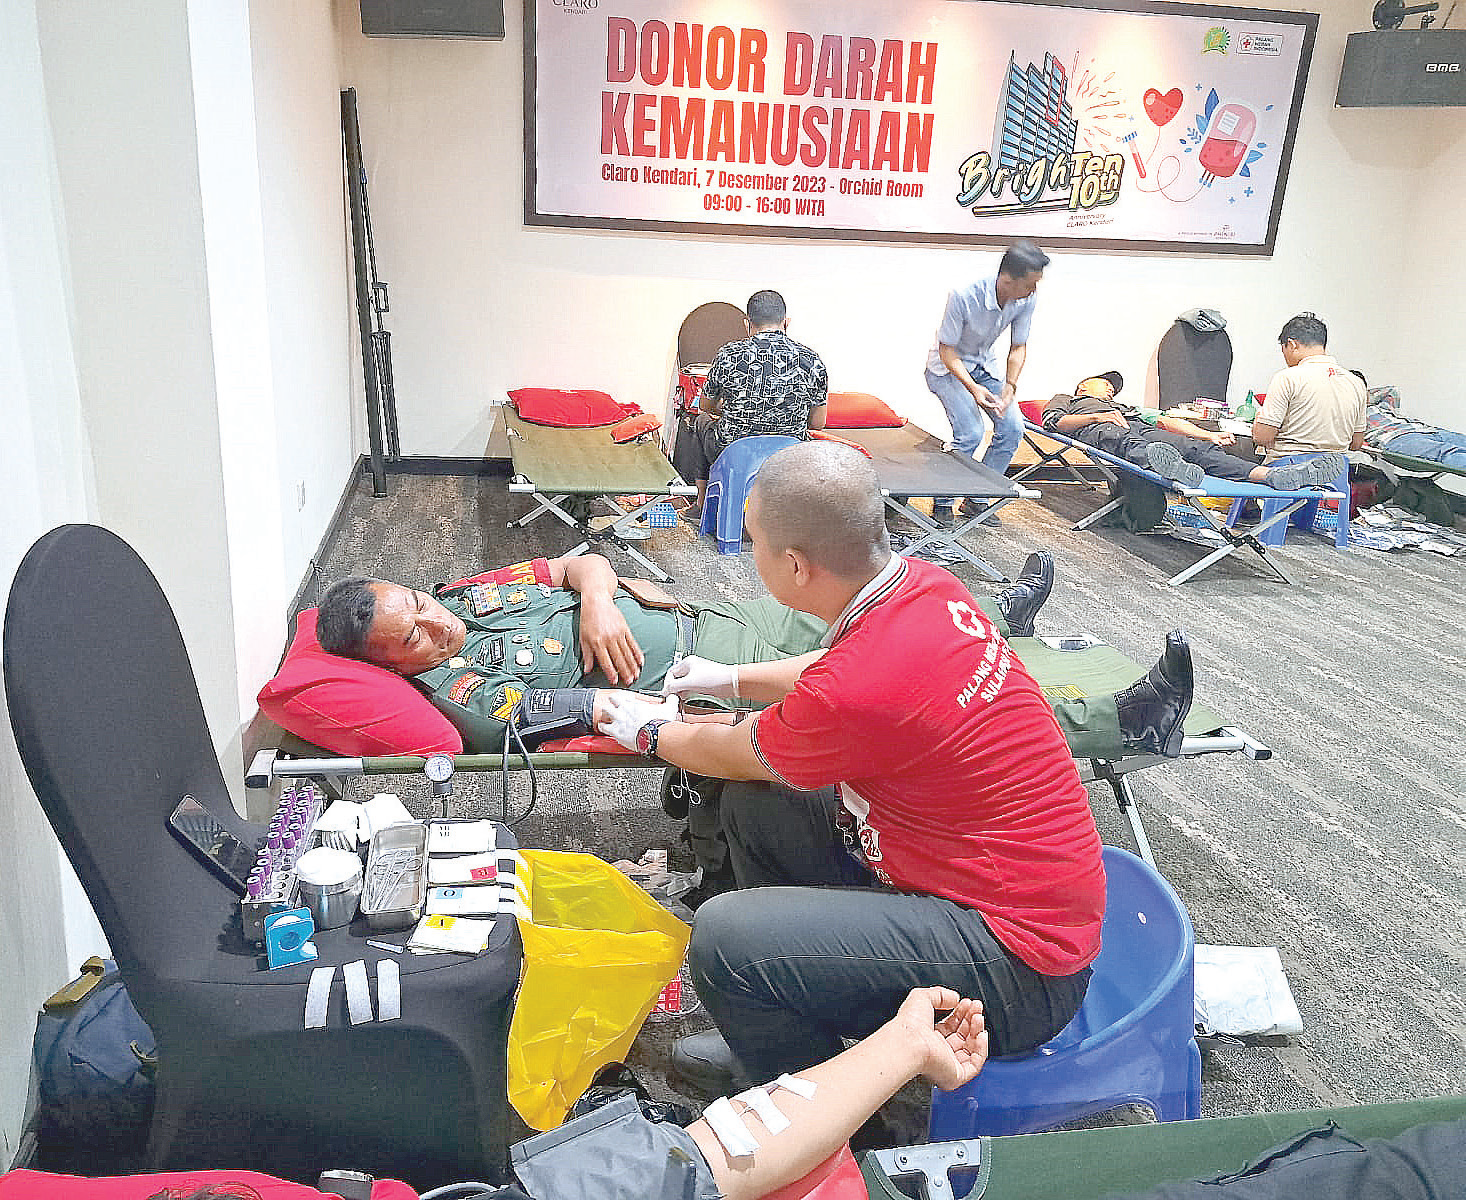 Suasana donor darah di Hotel Claro Kendari, kemarin (7/12). (Ewin Endang Saputri/Kendari Pos)